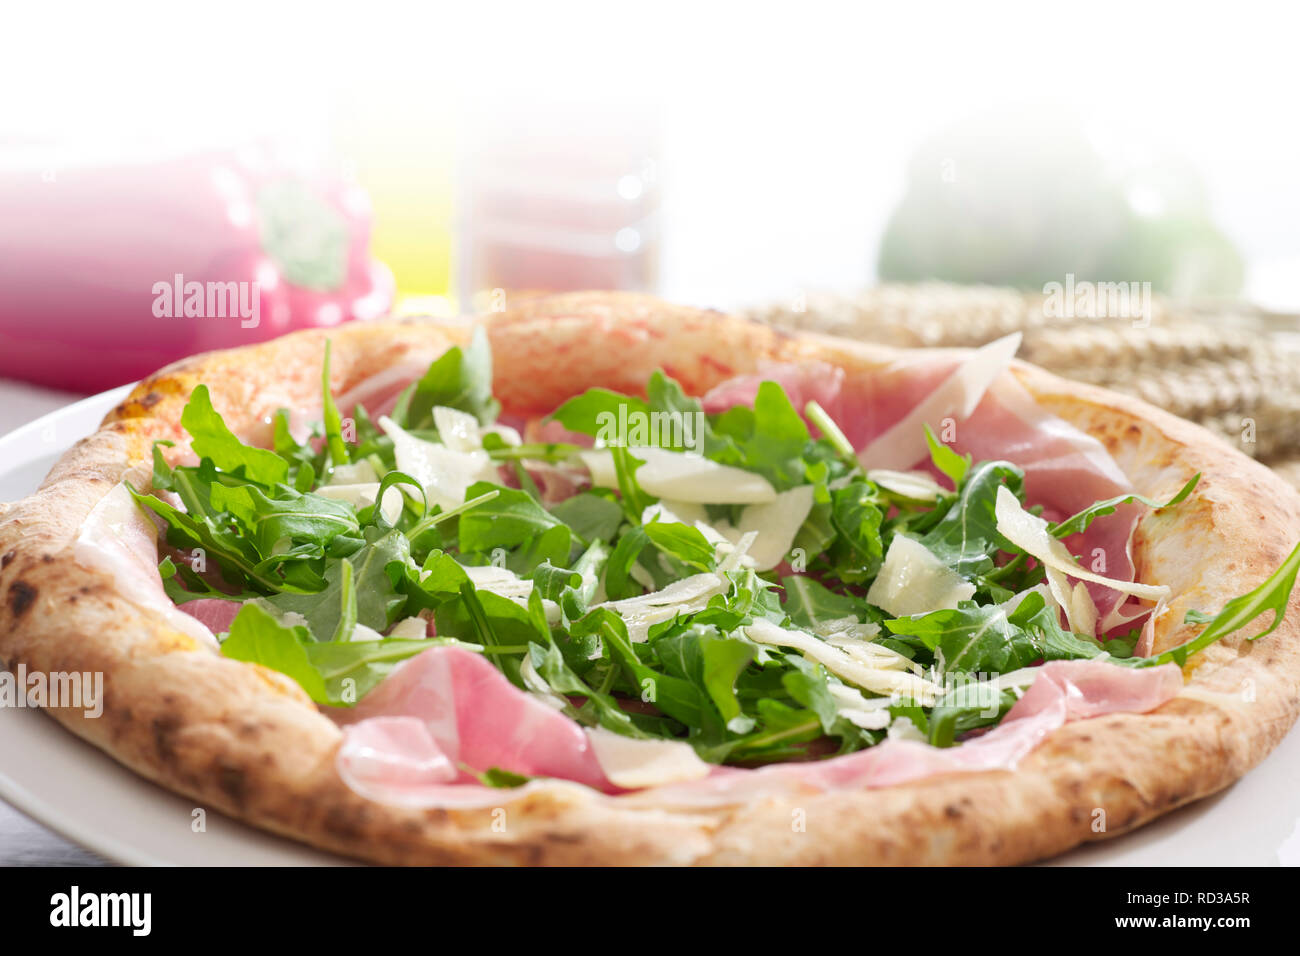 Close up of Arugula-Prosciutto pizza, studio shot Stock Photo